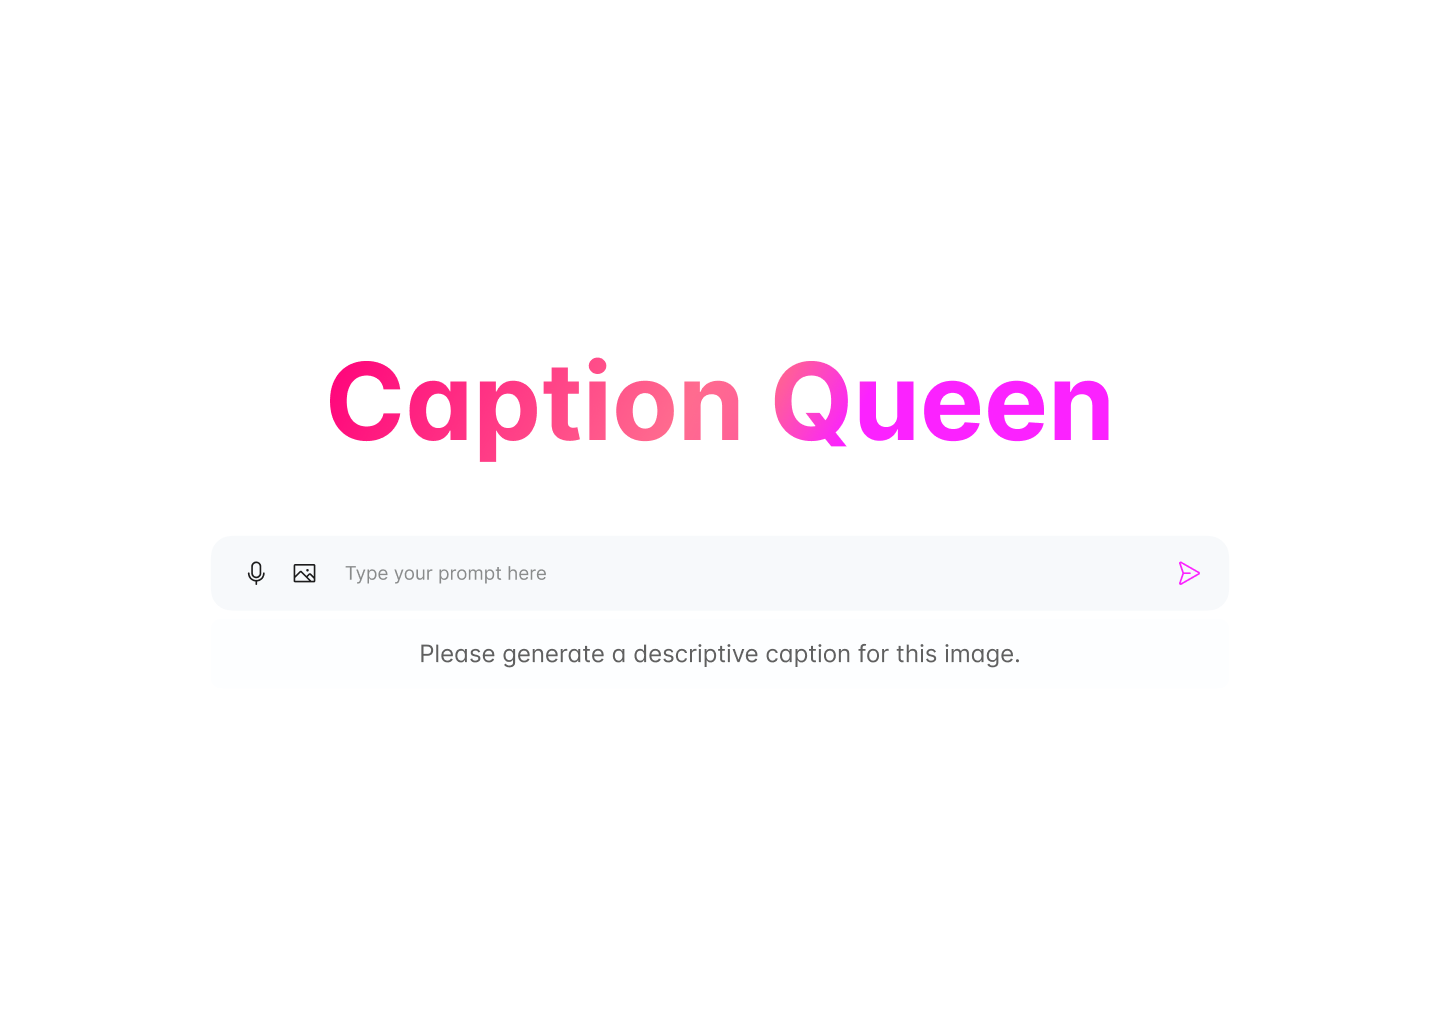 Caption queen